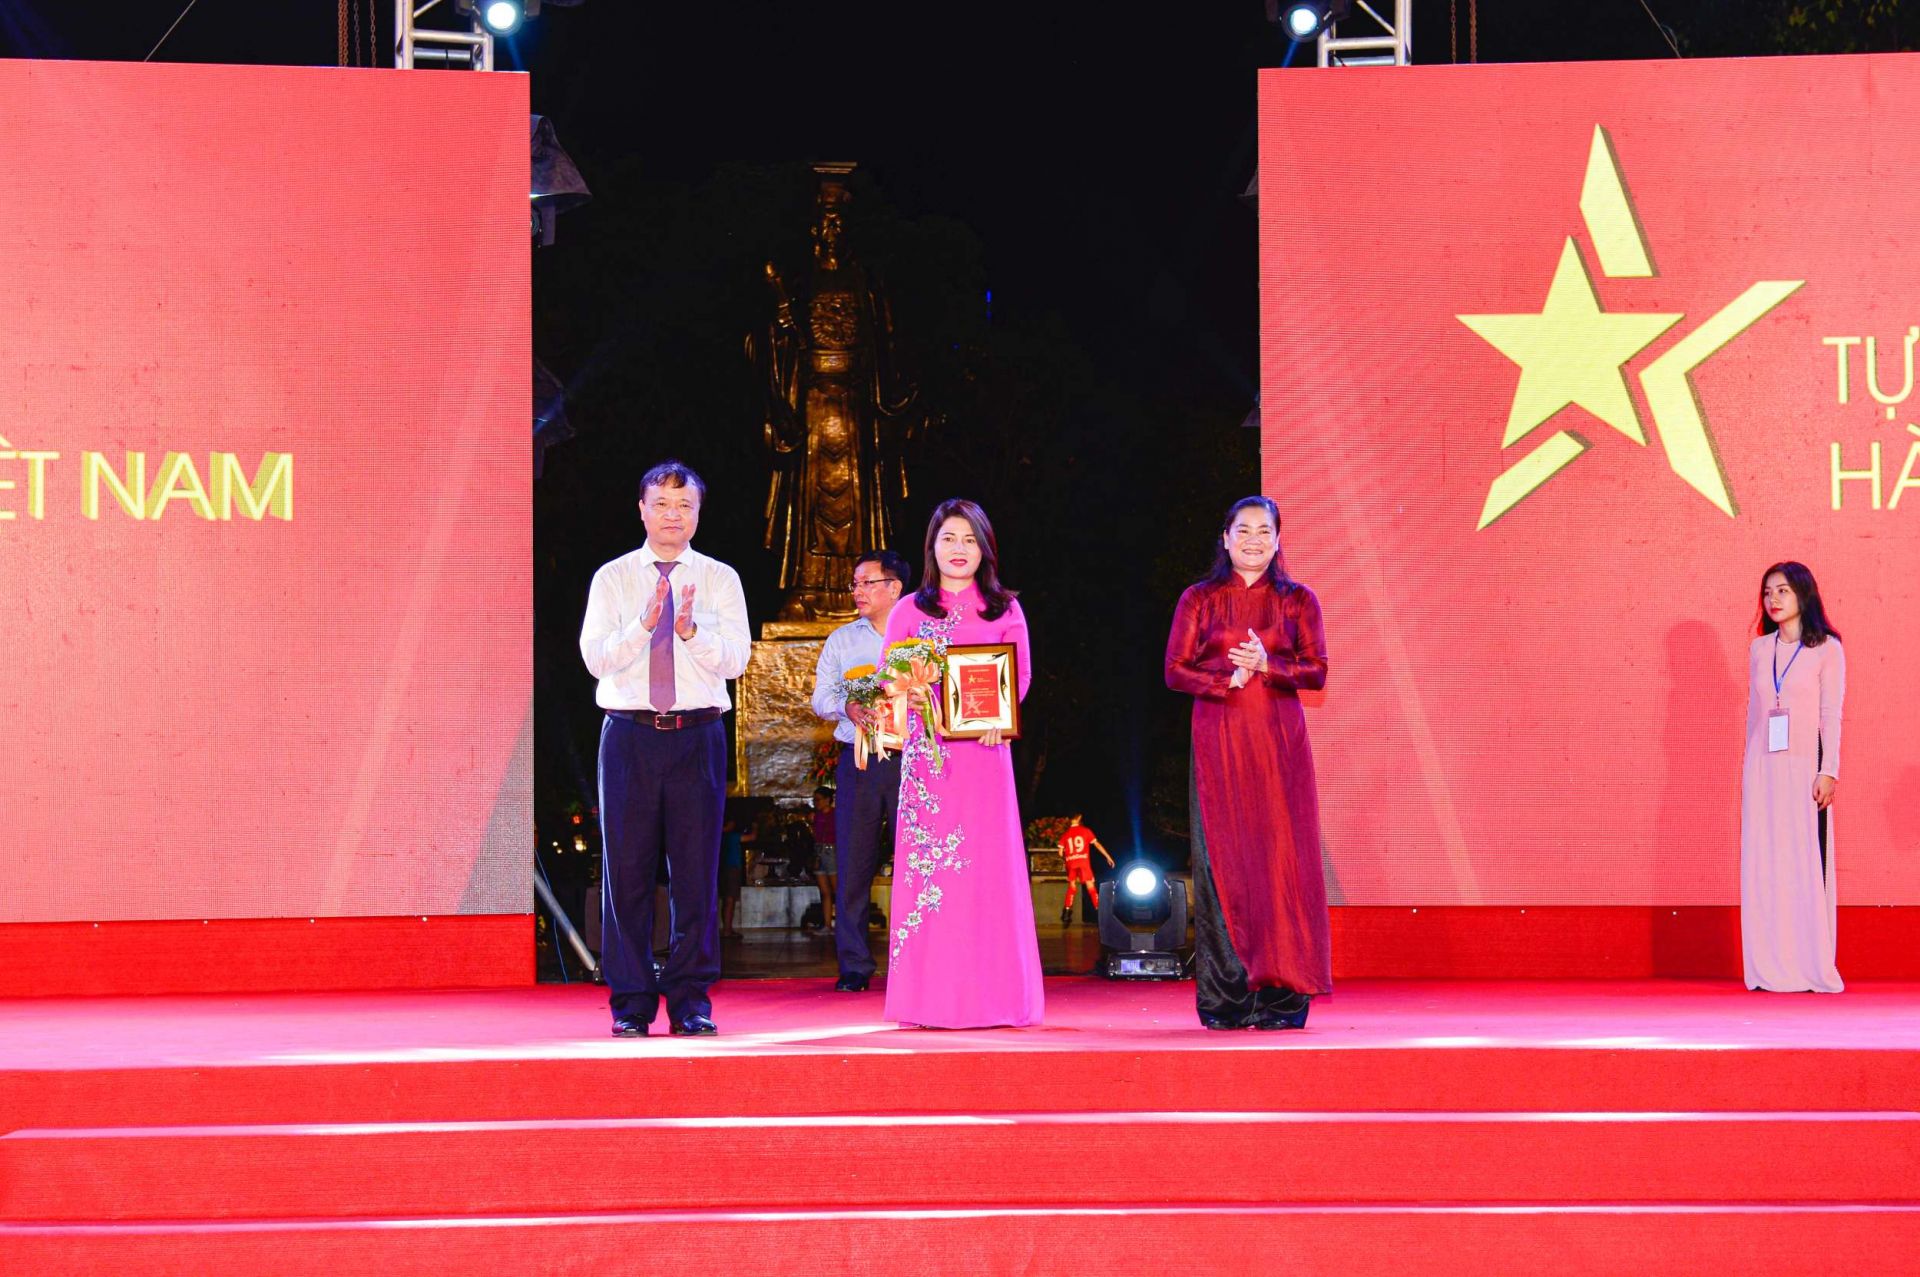 Thứ trưởng Bộ Công Thương Đỗ Thắng Hải (trái) và Phó Chủ tịch Hội Liên hiệp Phụ nữ Việt Nam Đỗ Thị Thu Thảo (phải) trao kỷ niệm chương cho đại diện Tập đoàn Than - Khoáng sản Việt Nam